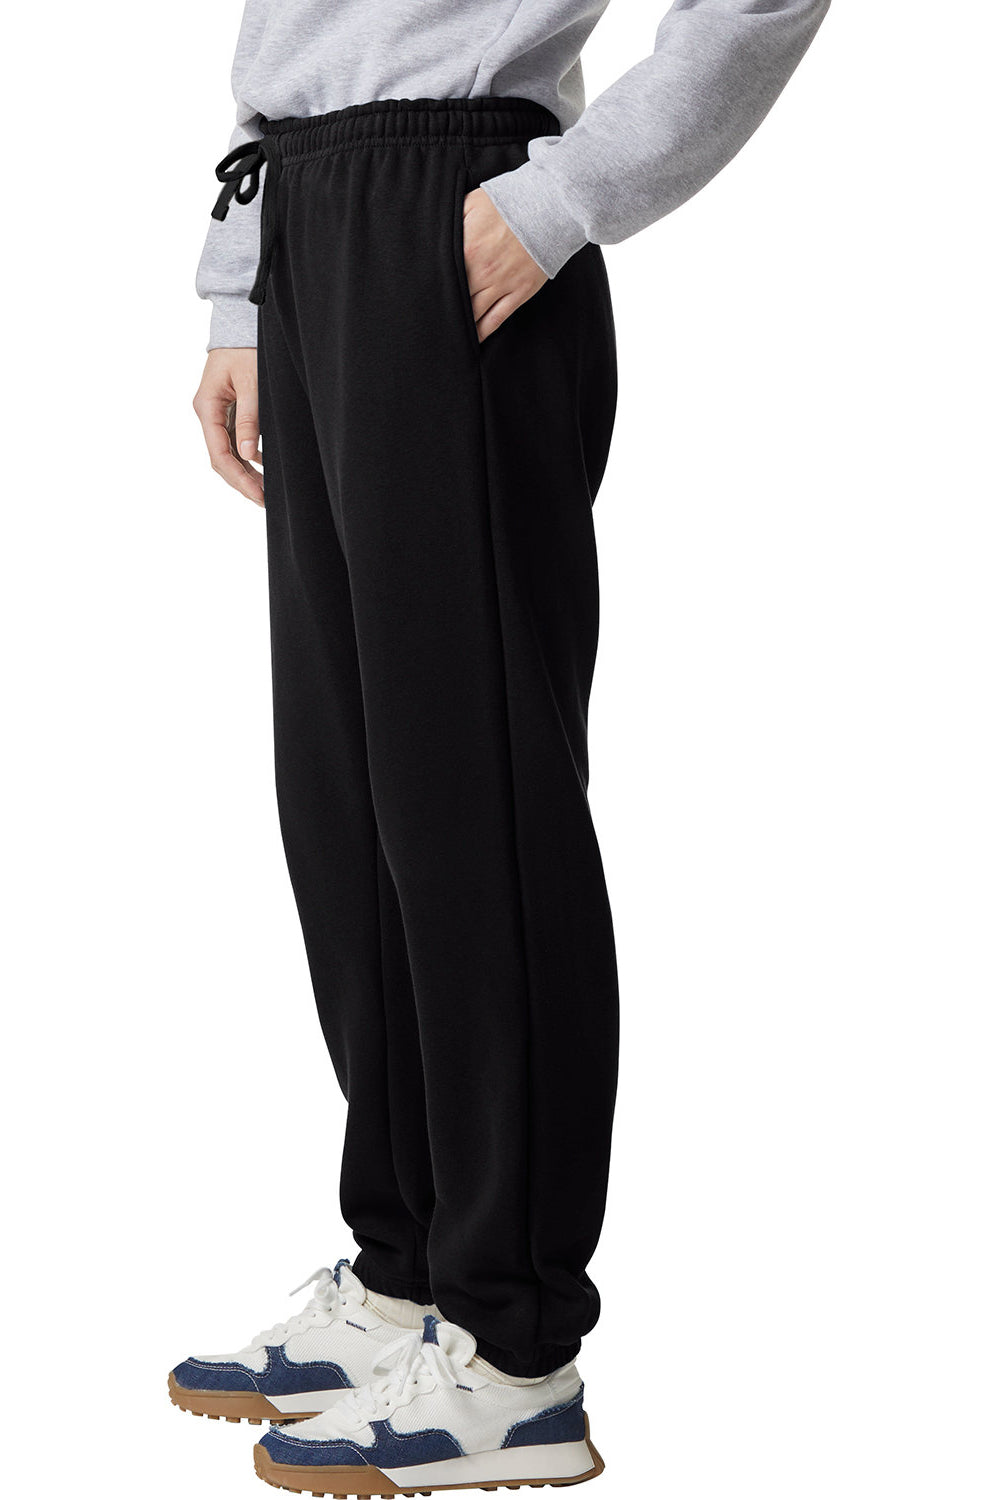 American Apparel RF491 Mens ReFlex Fleece Sweatpants w/ Pockets Black Model Side